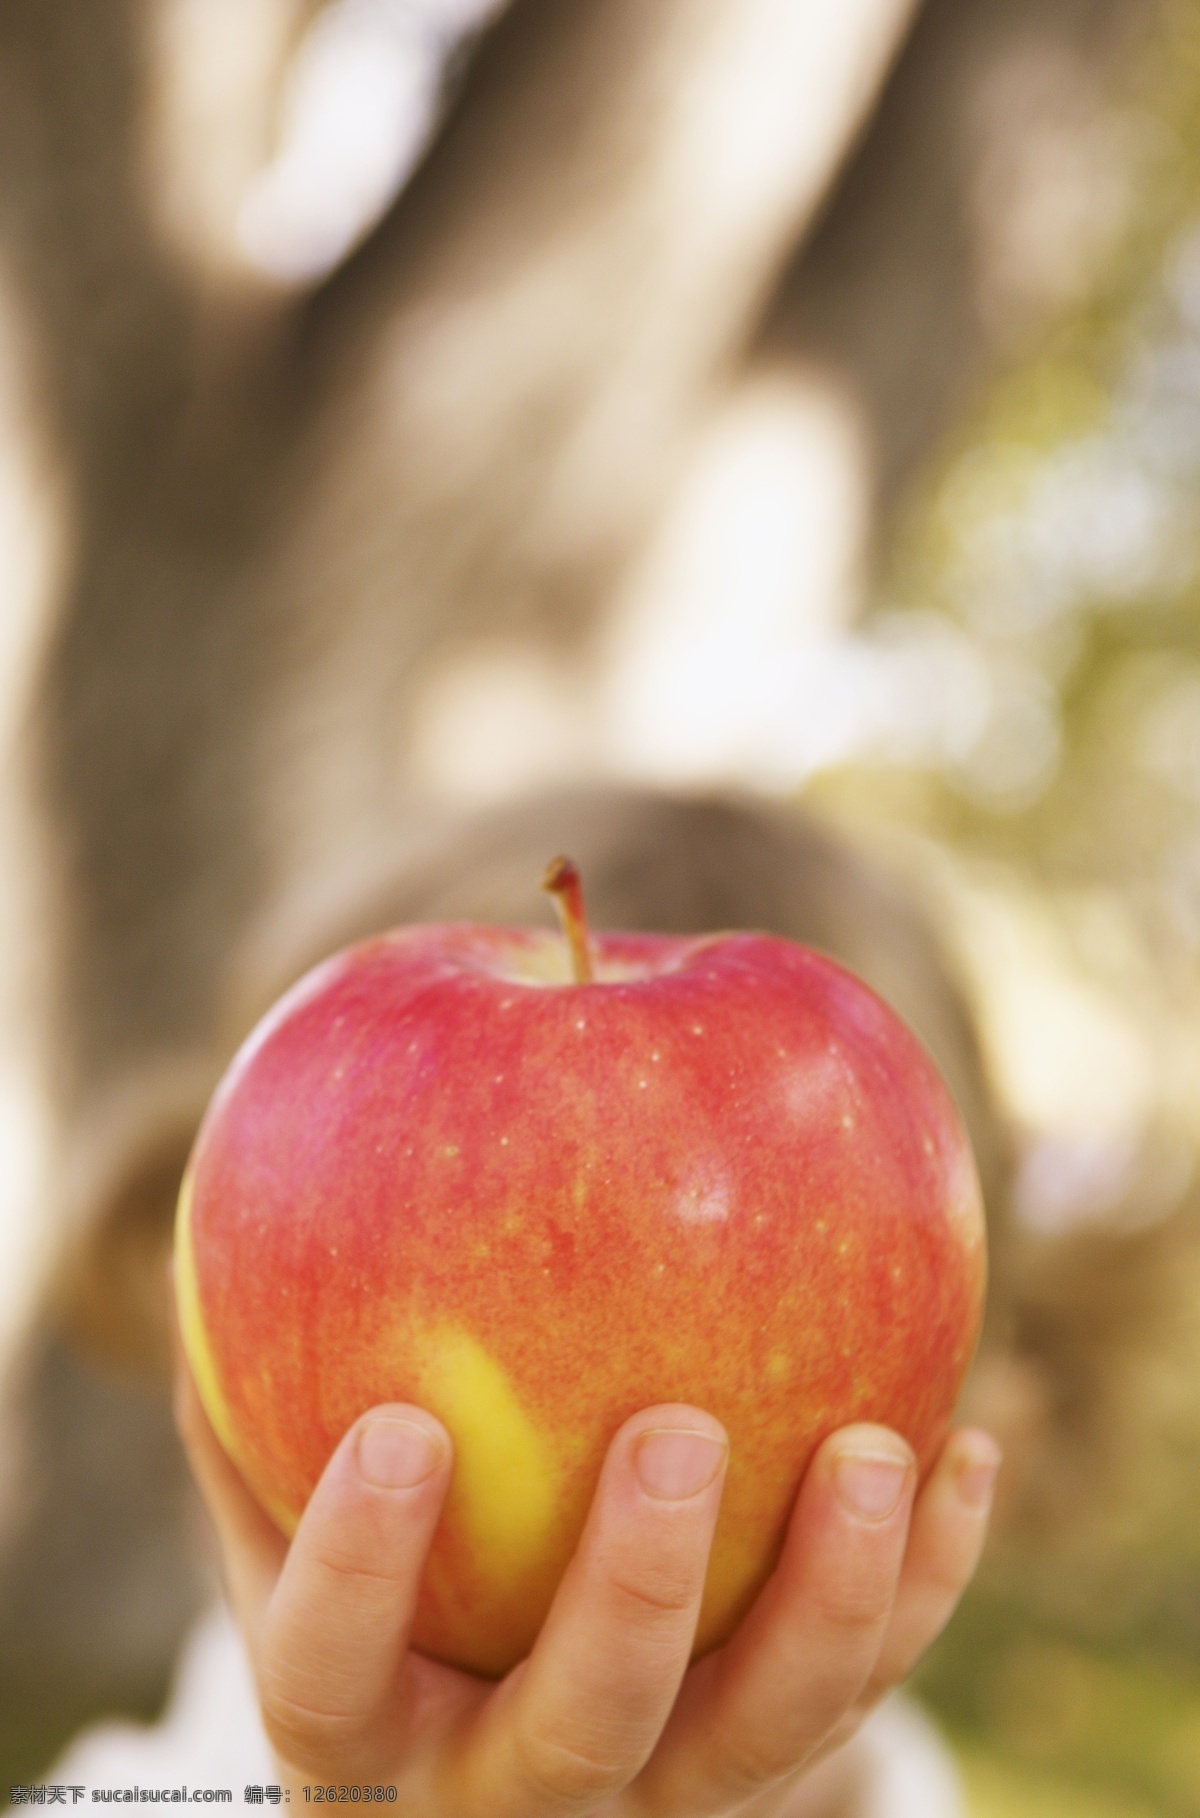 苹果 小手 草地 苹果摄影 苹果素材 水果 儿童 儿童摄影 小孩 手势 苹果图片 餐饮美食